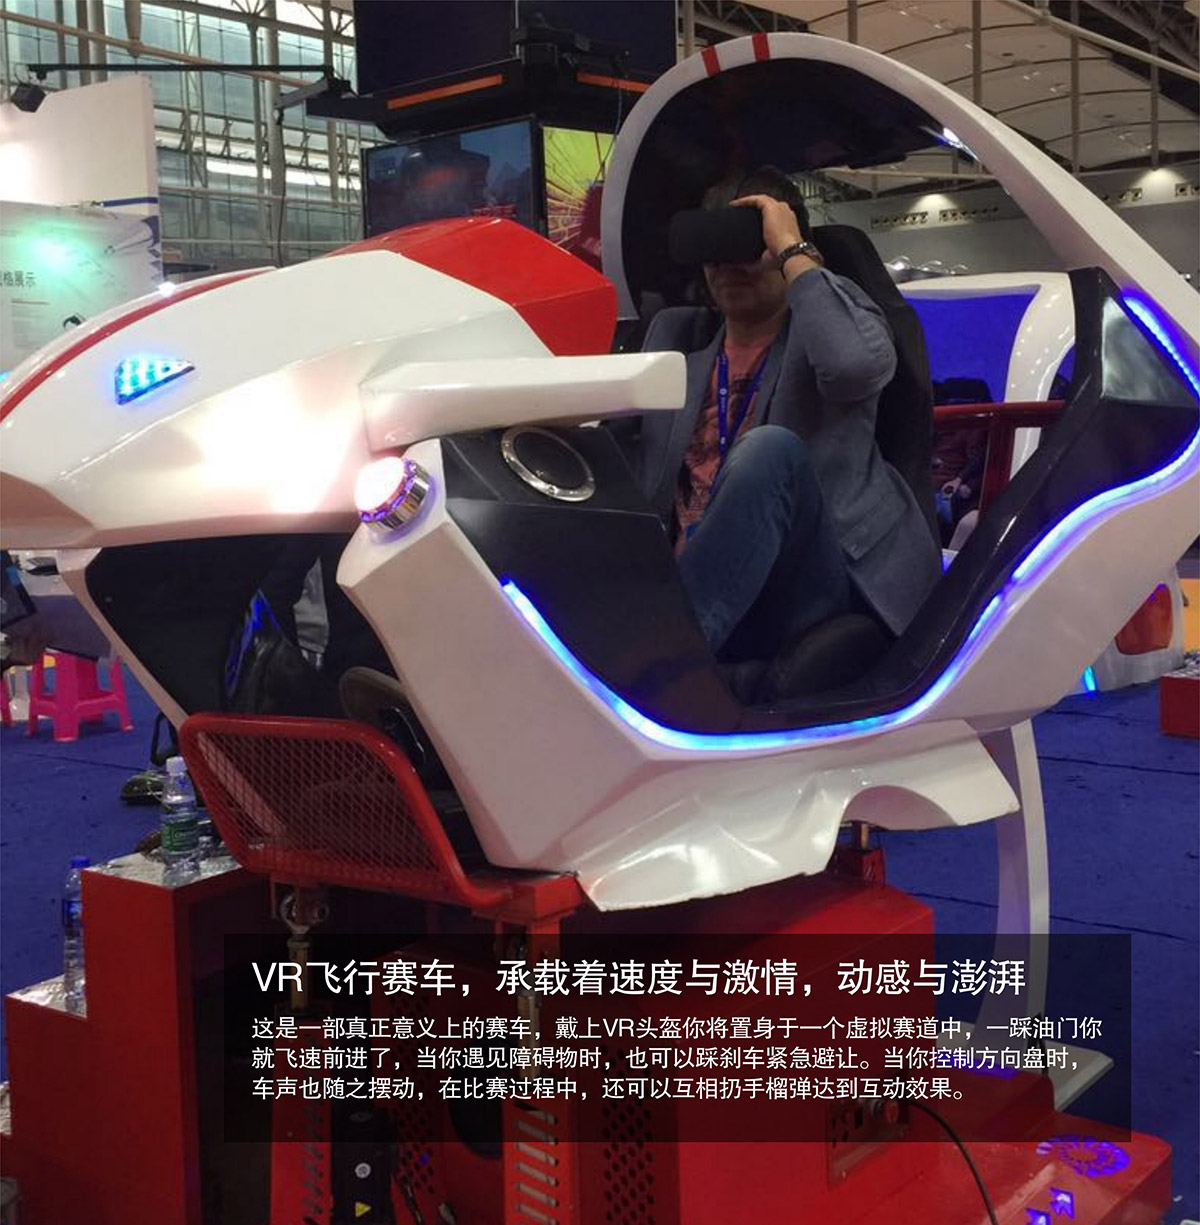 社区安全VR飞行虚拟赛车速度与激情动感澎湃.jpg